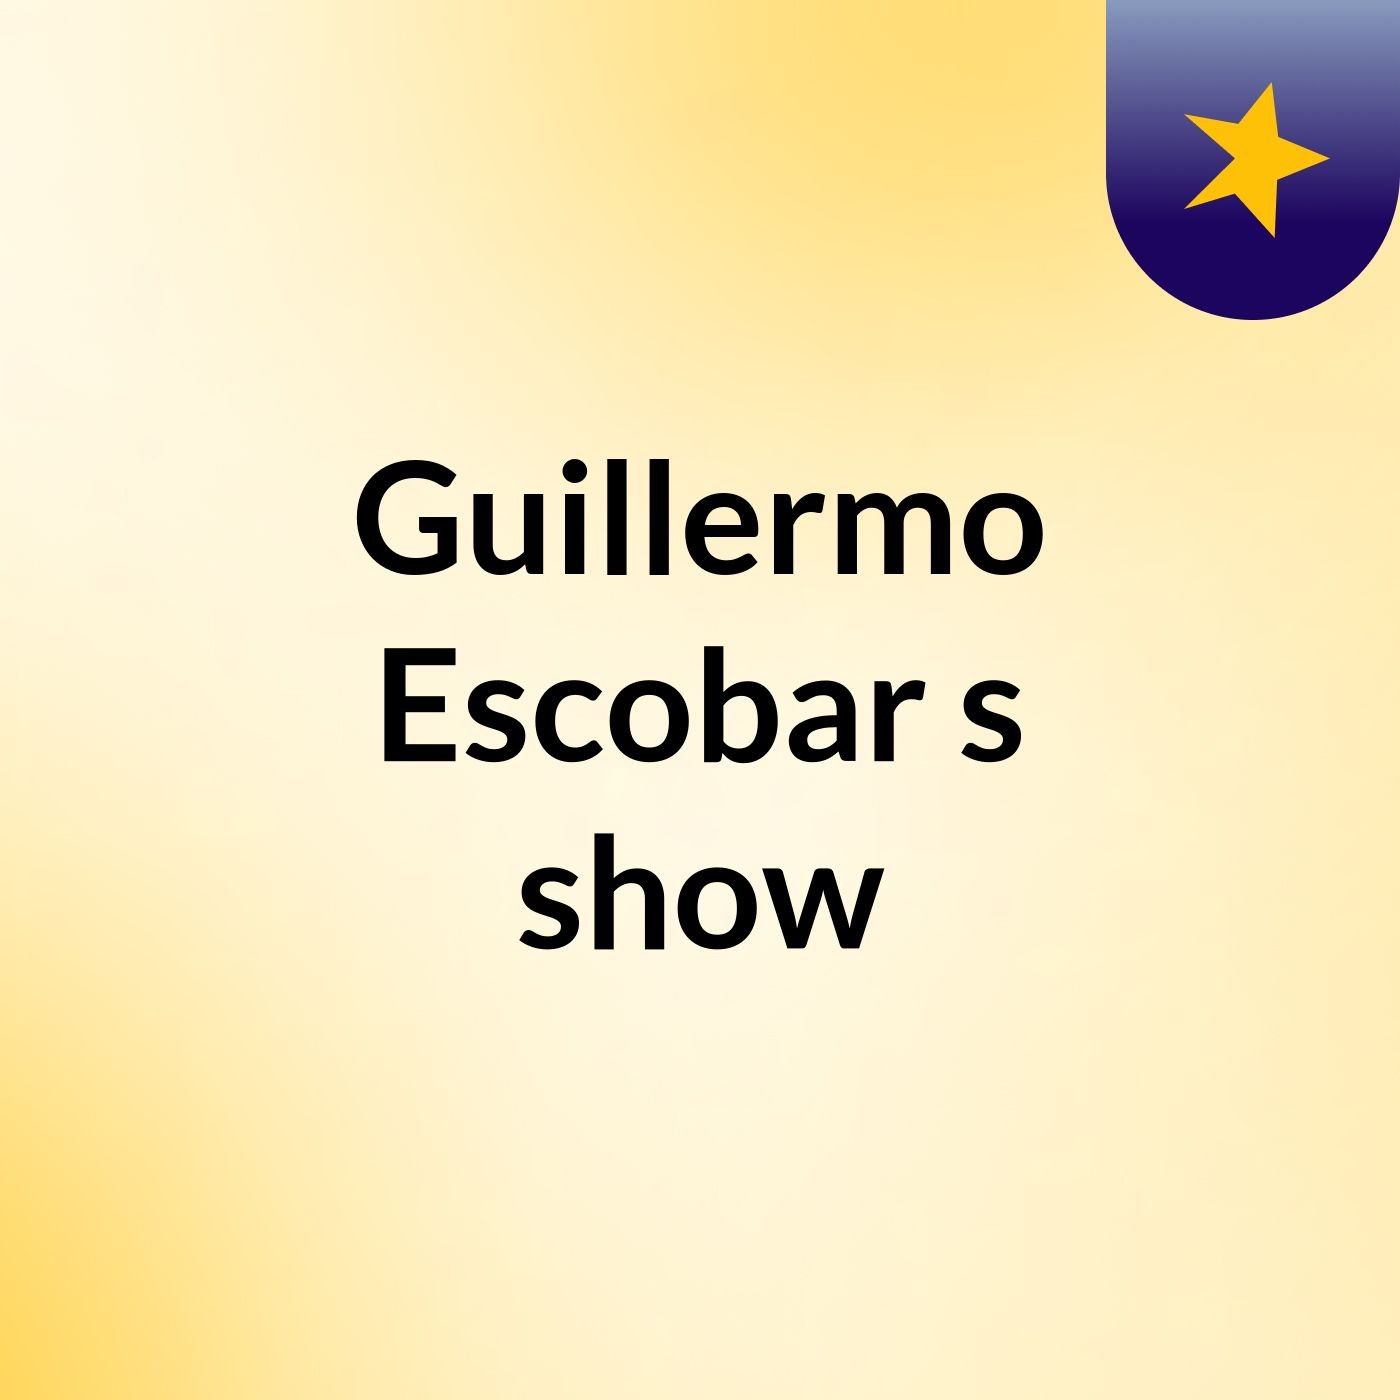 Guillermo Escobar's show